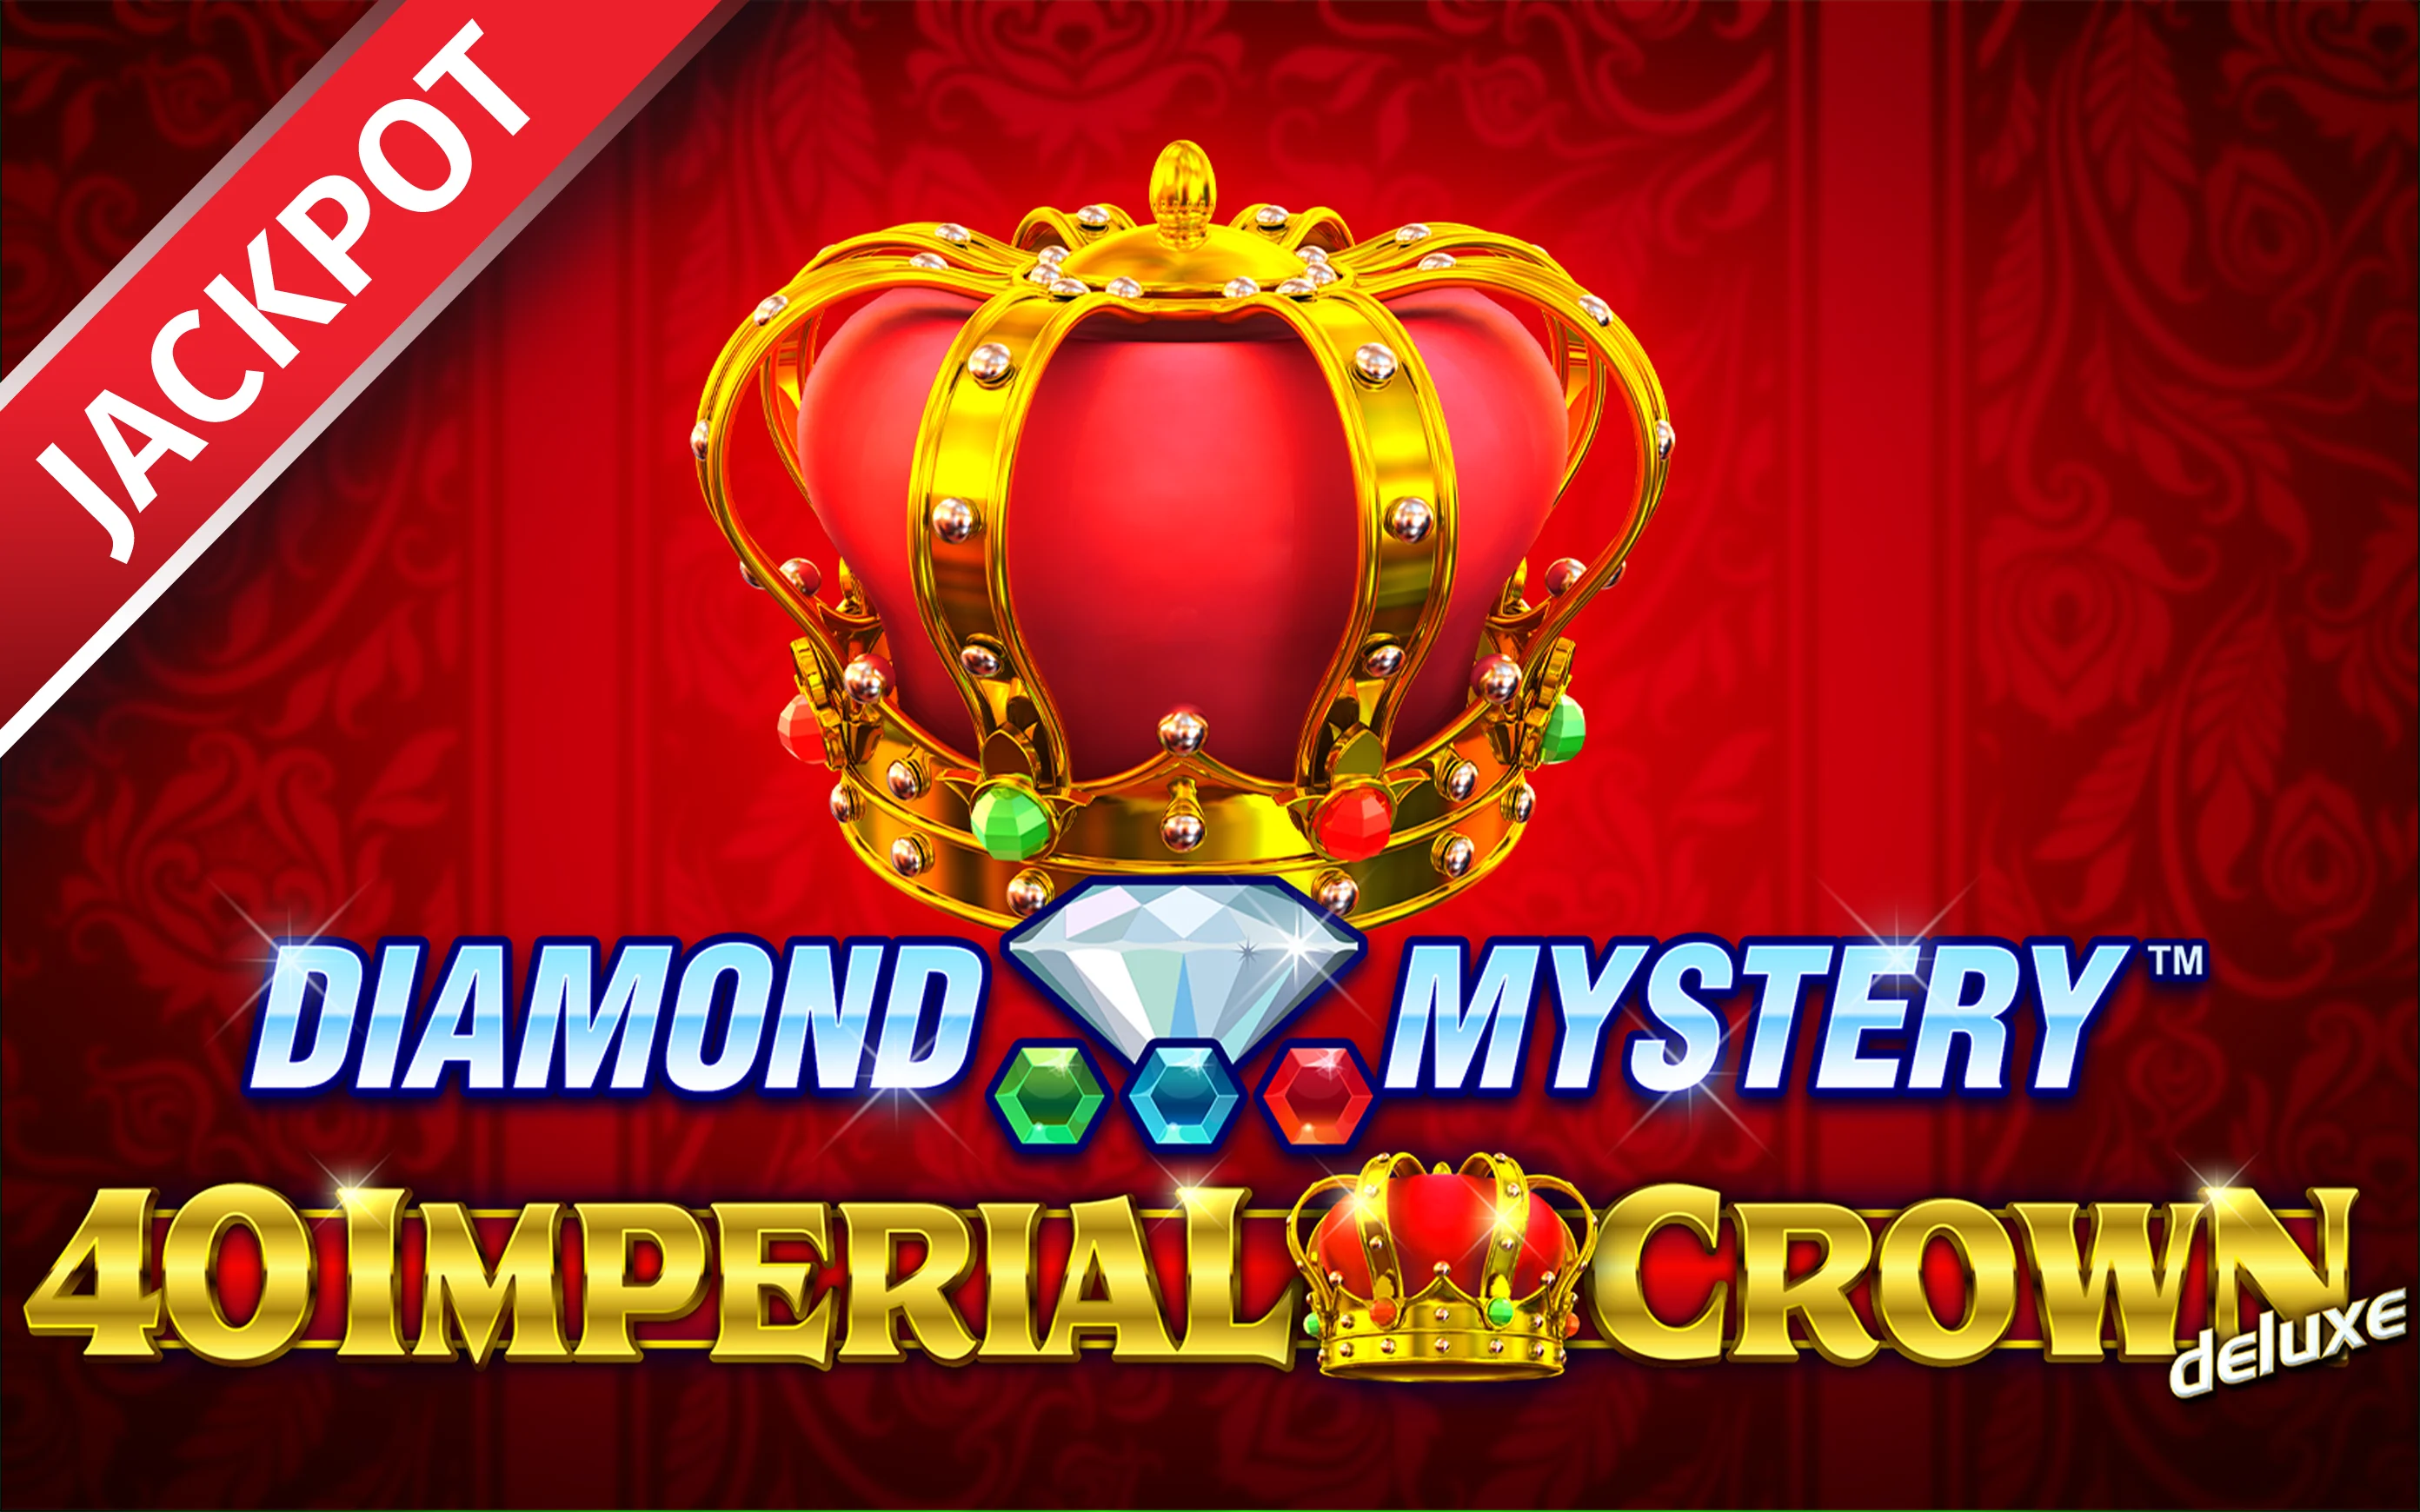 Juega a Diamond Mystery™ – 40 Imperial Crown deluxe en el casino en línea de Starcasino.be